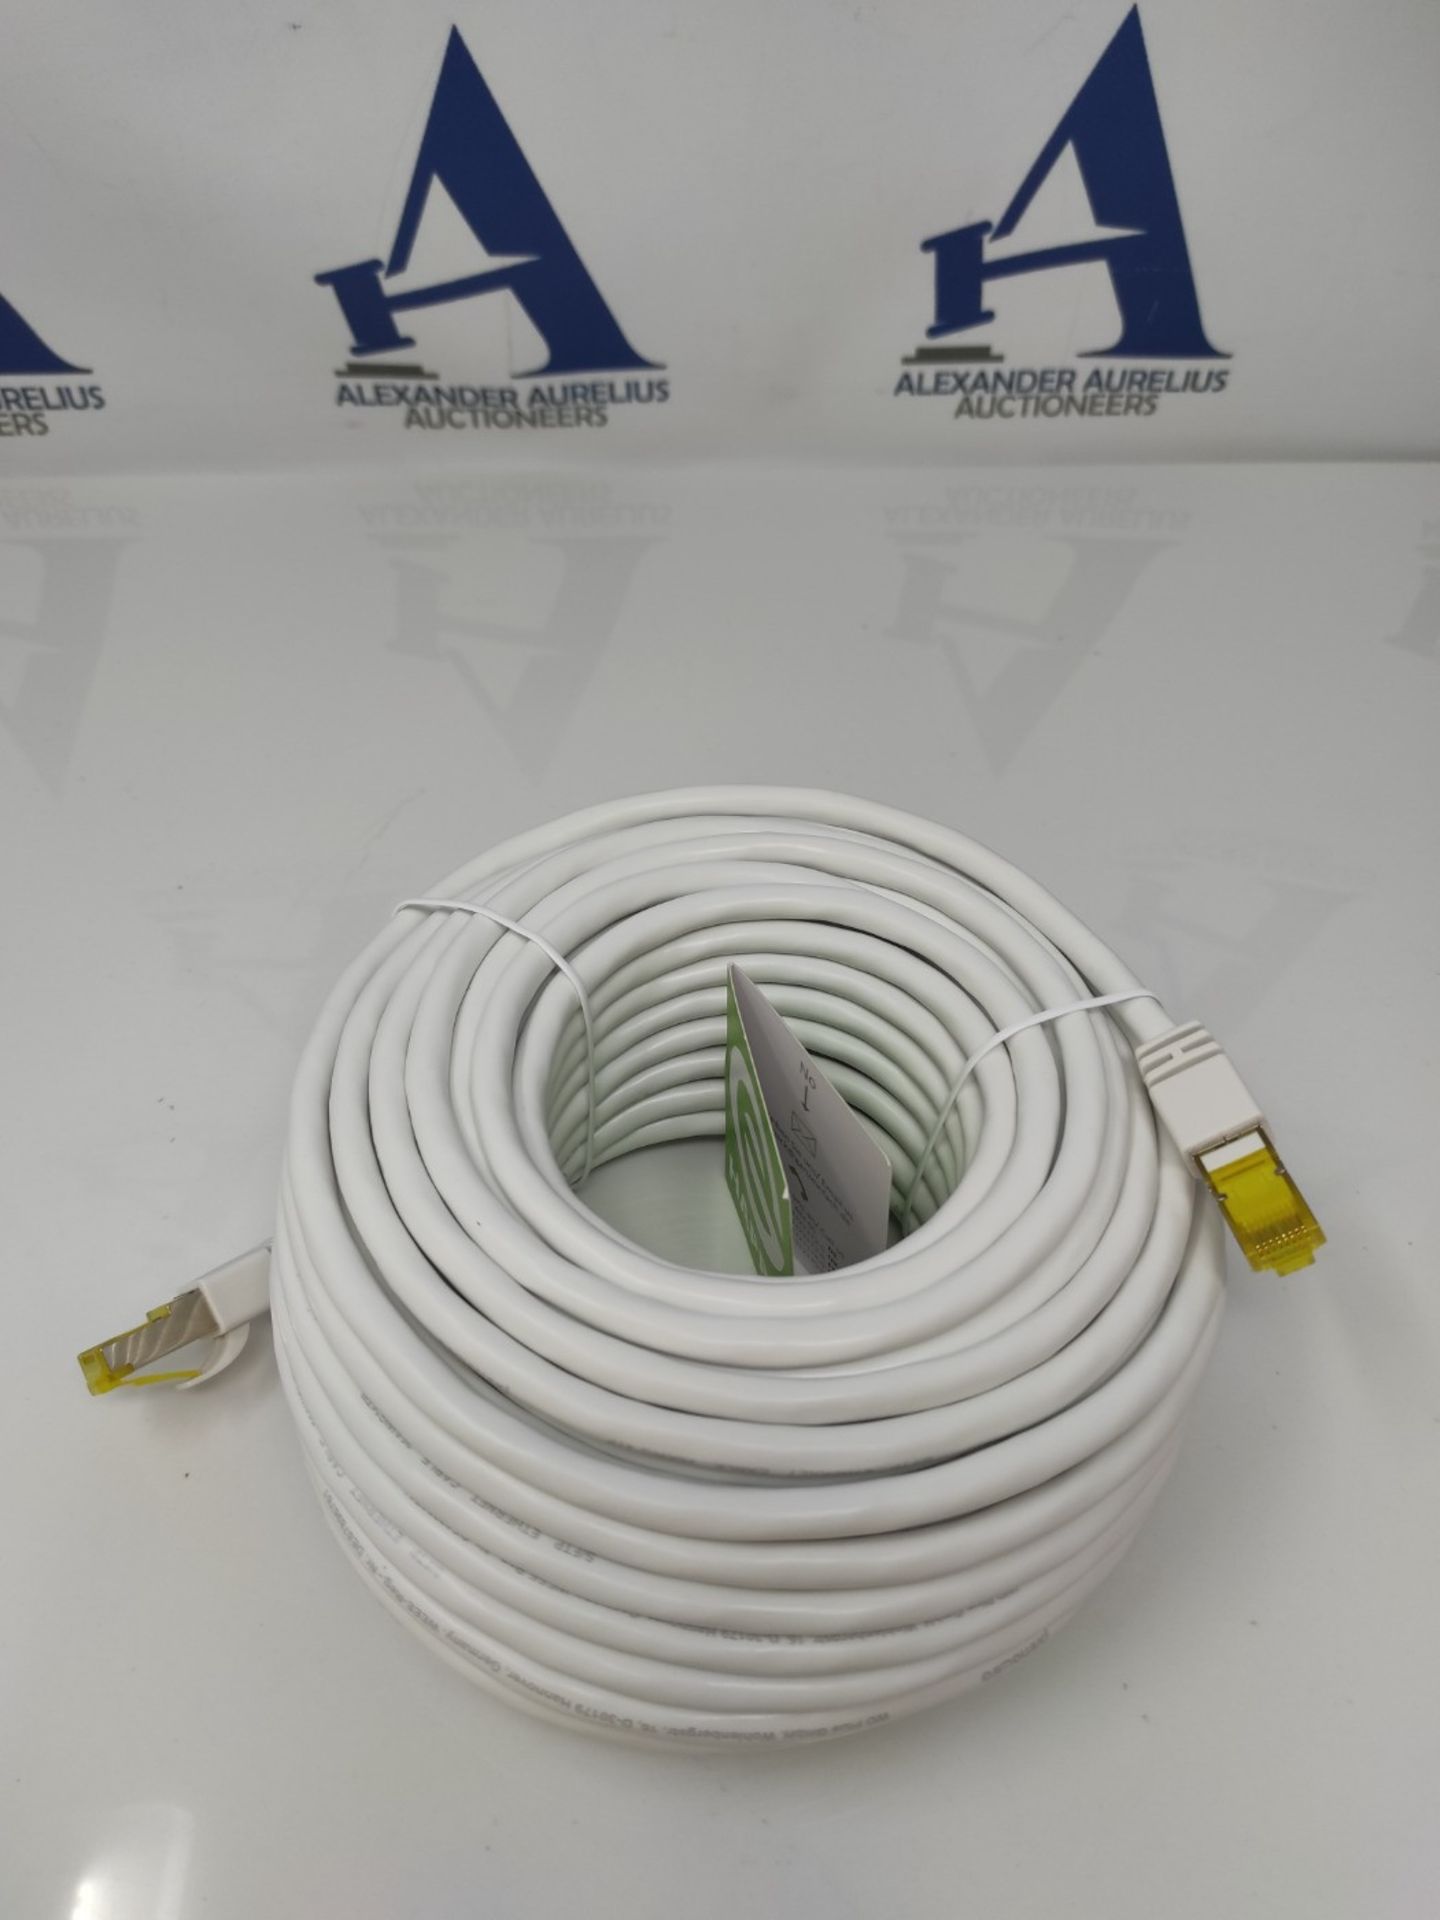 CSL - 20m CAT 7 Network Cable Gigabit Ethernet LAN Cable - 10000 Mbit/s - Patch Cable